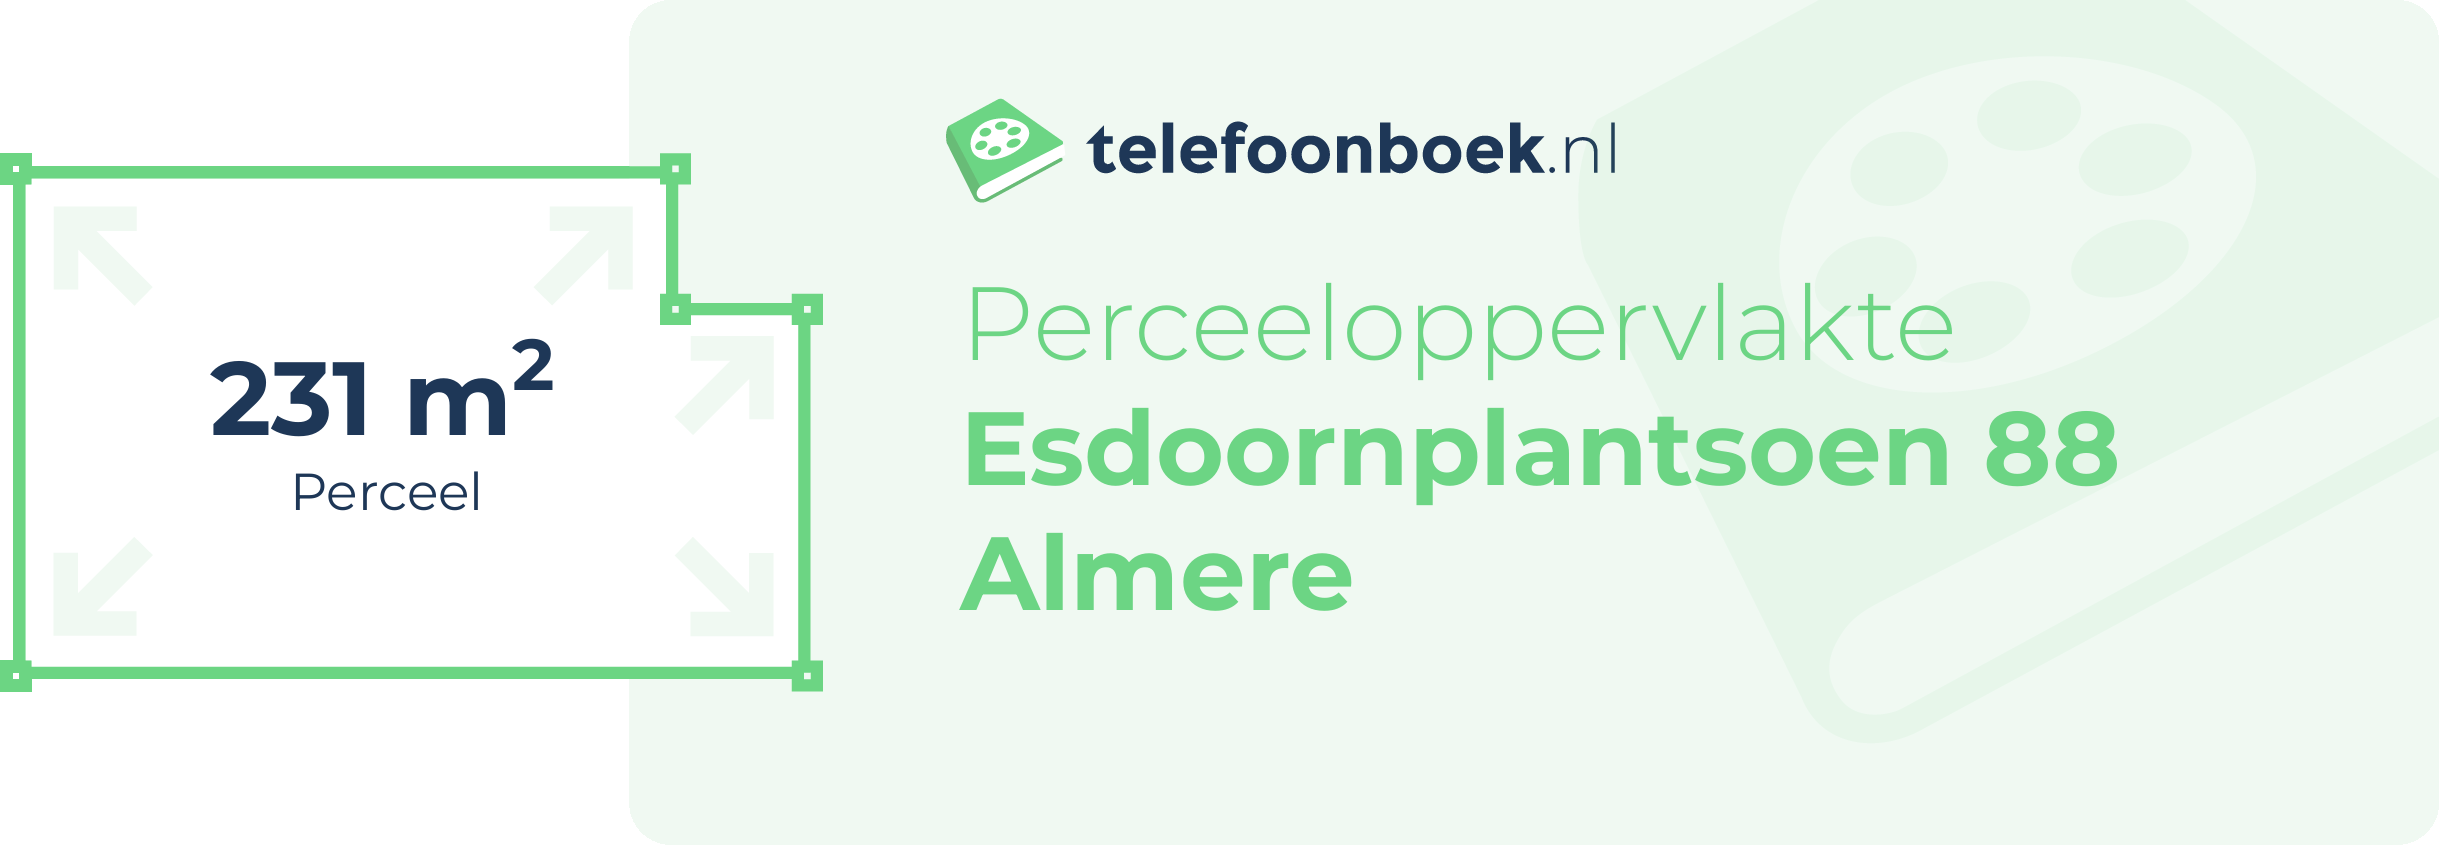 Perceeloppervlakte Esdoornplantsoen 88 Almere